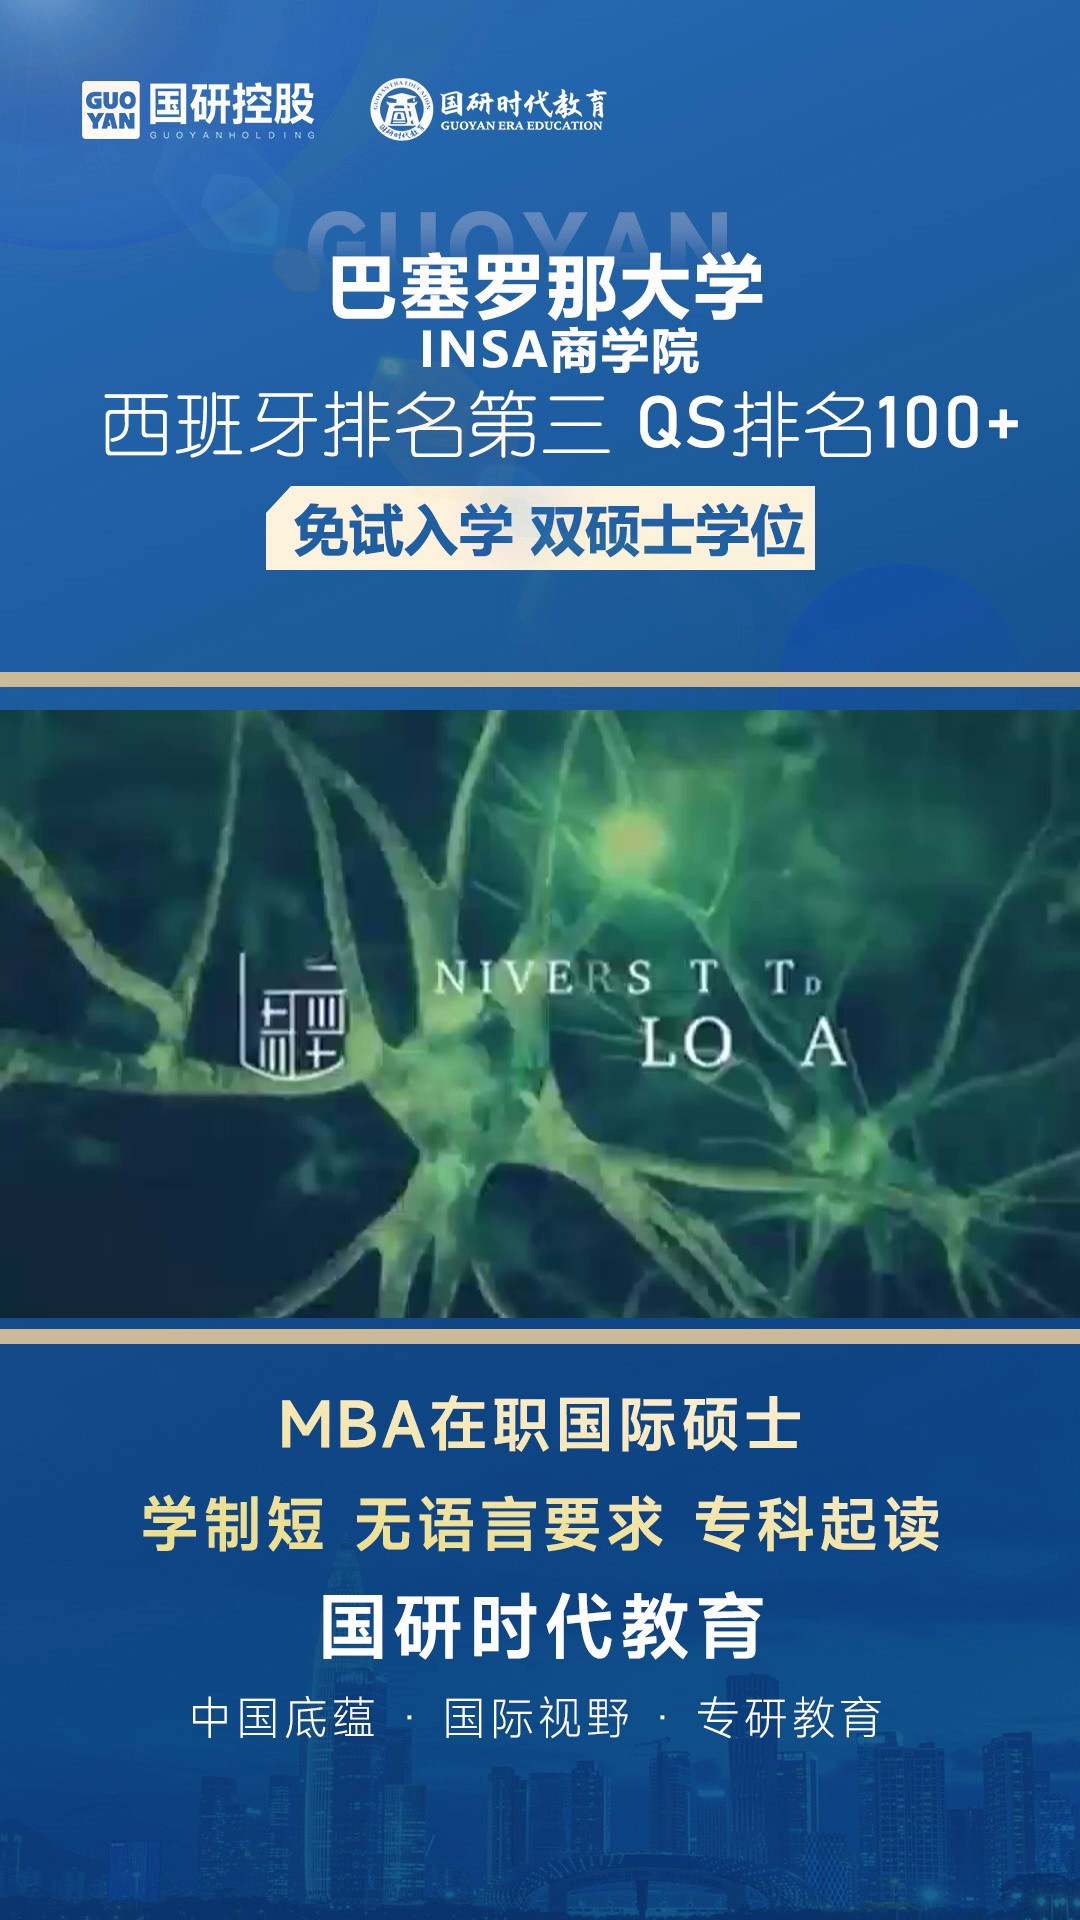 杭州市免试入学MBA咨询,MBA